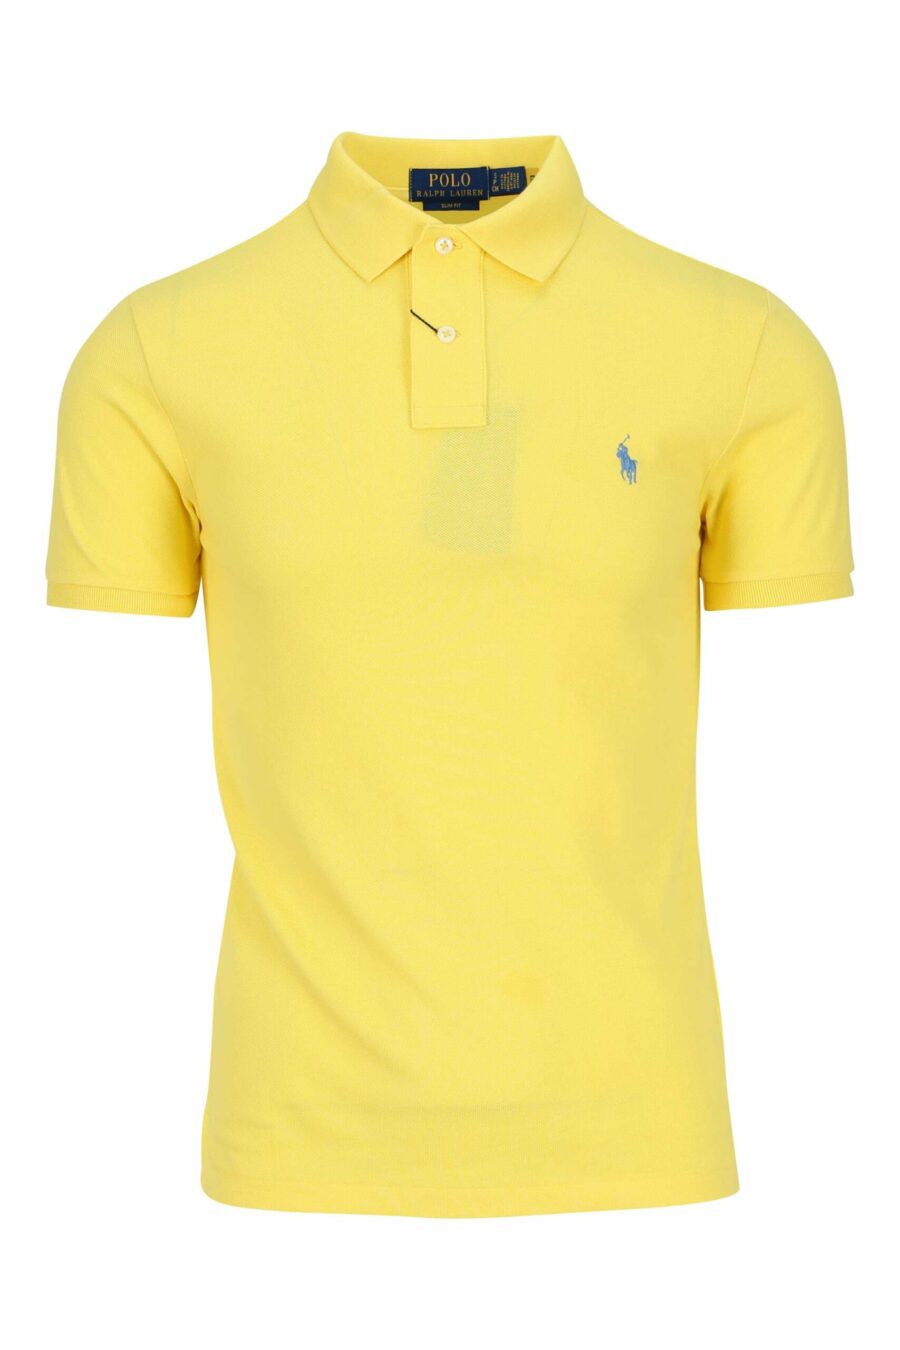 Gelbes und blaues T-Shirt mit Mini-Logo "Polo" - 3616535972186 skaliert